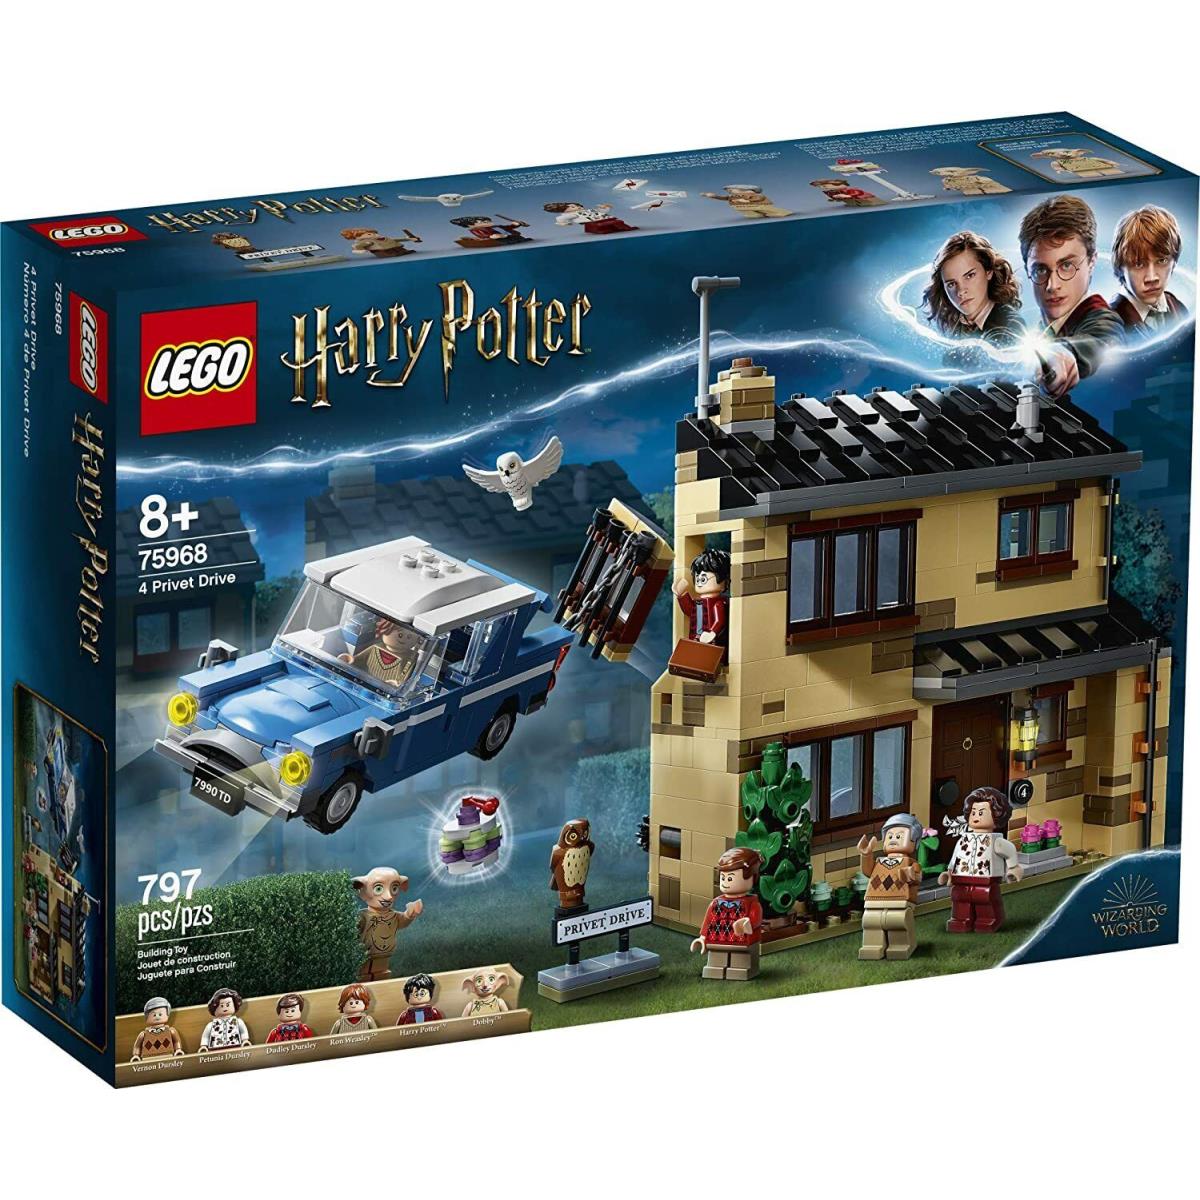 Lego Harry Potter 4 Privet Drive 75968 Building Set 797 Pieces